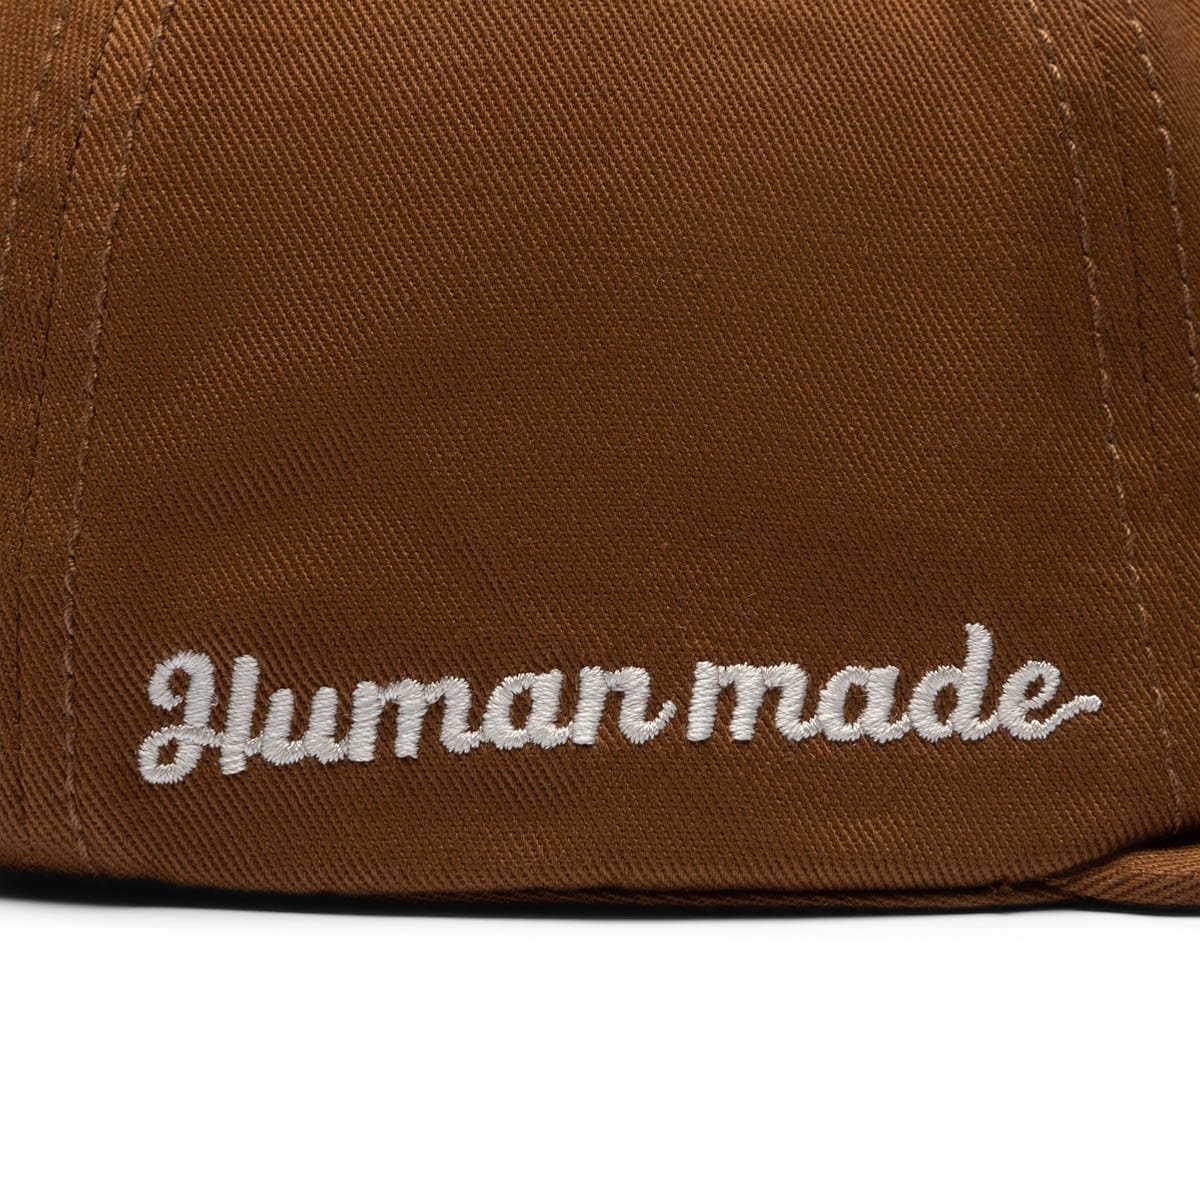 Human Made Headwear BROWN / O/S 6 PANEL TWILL CAP #1